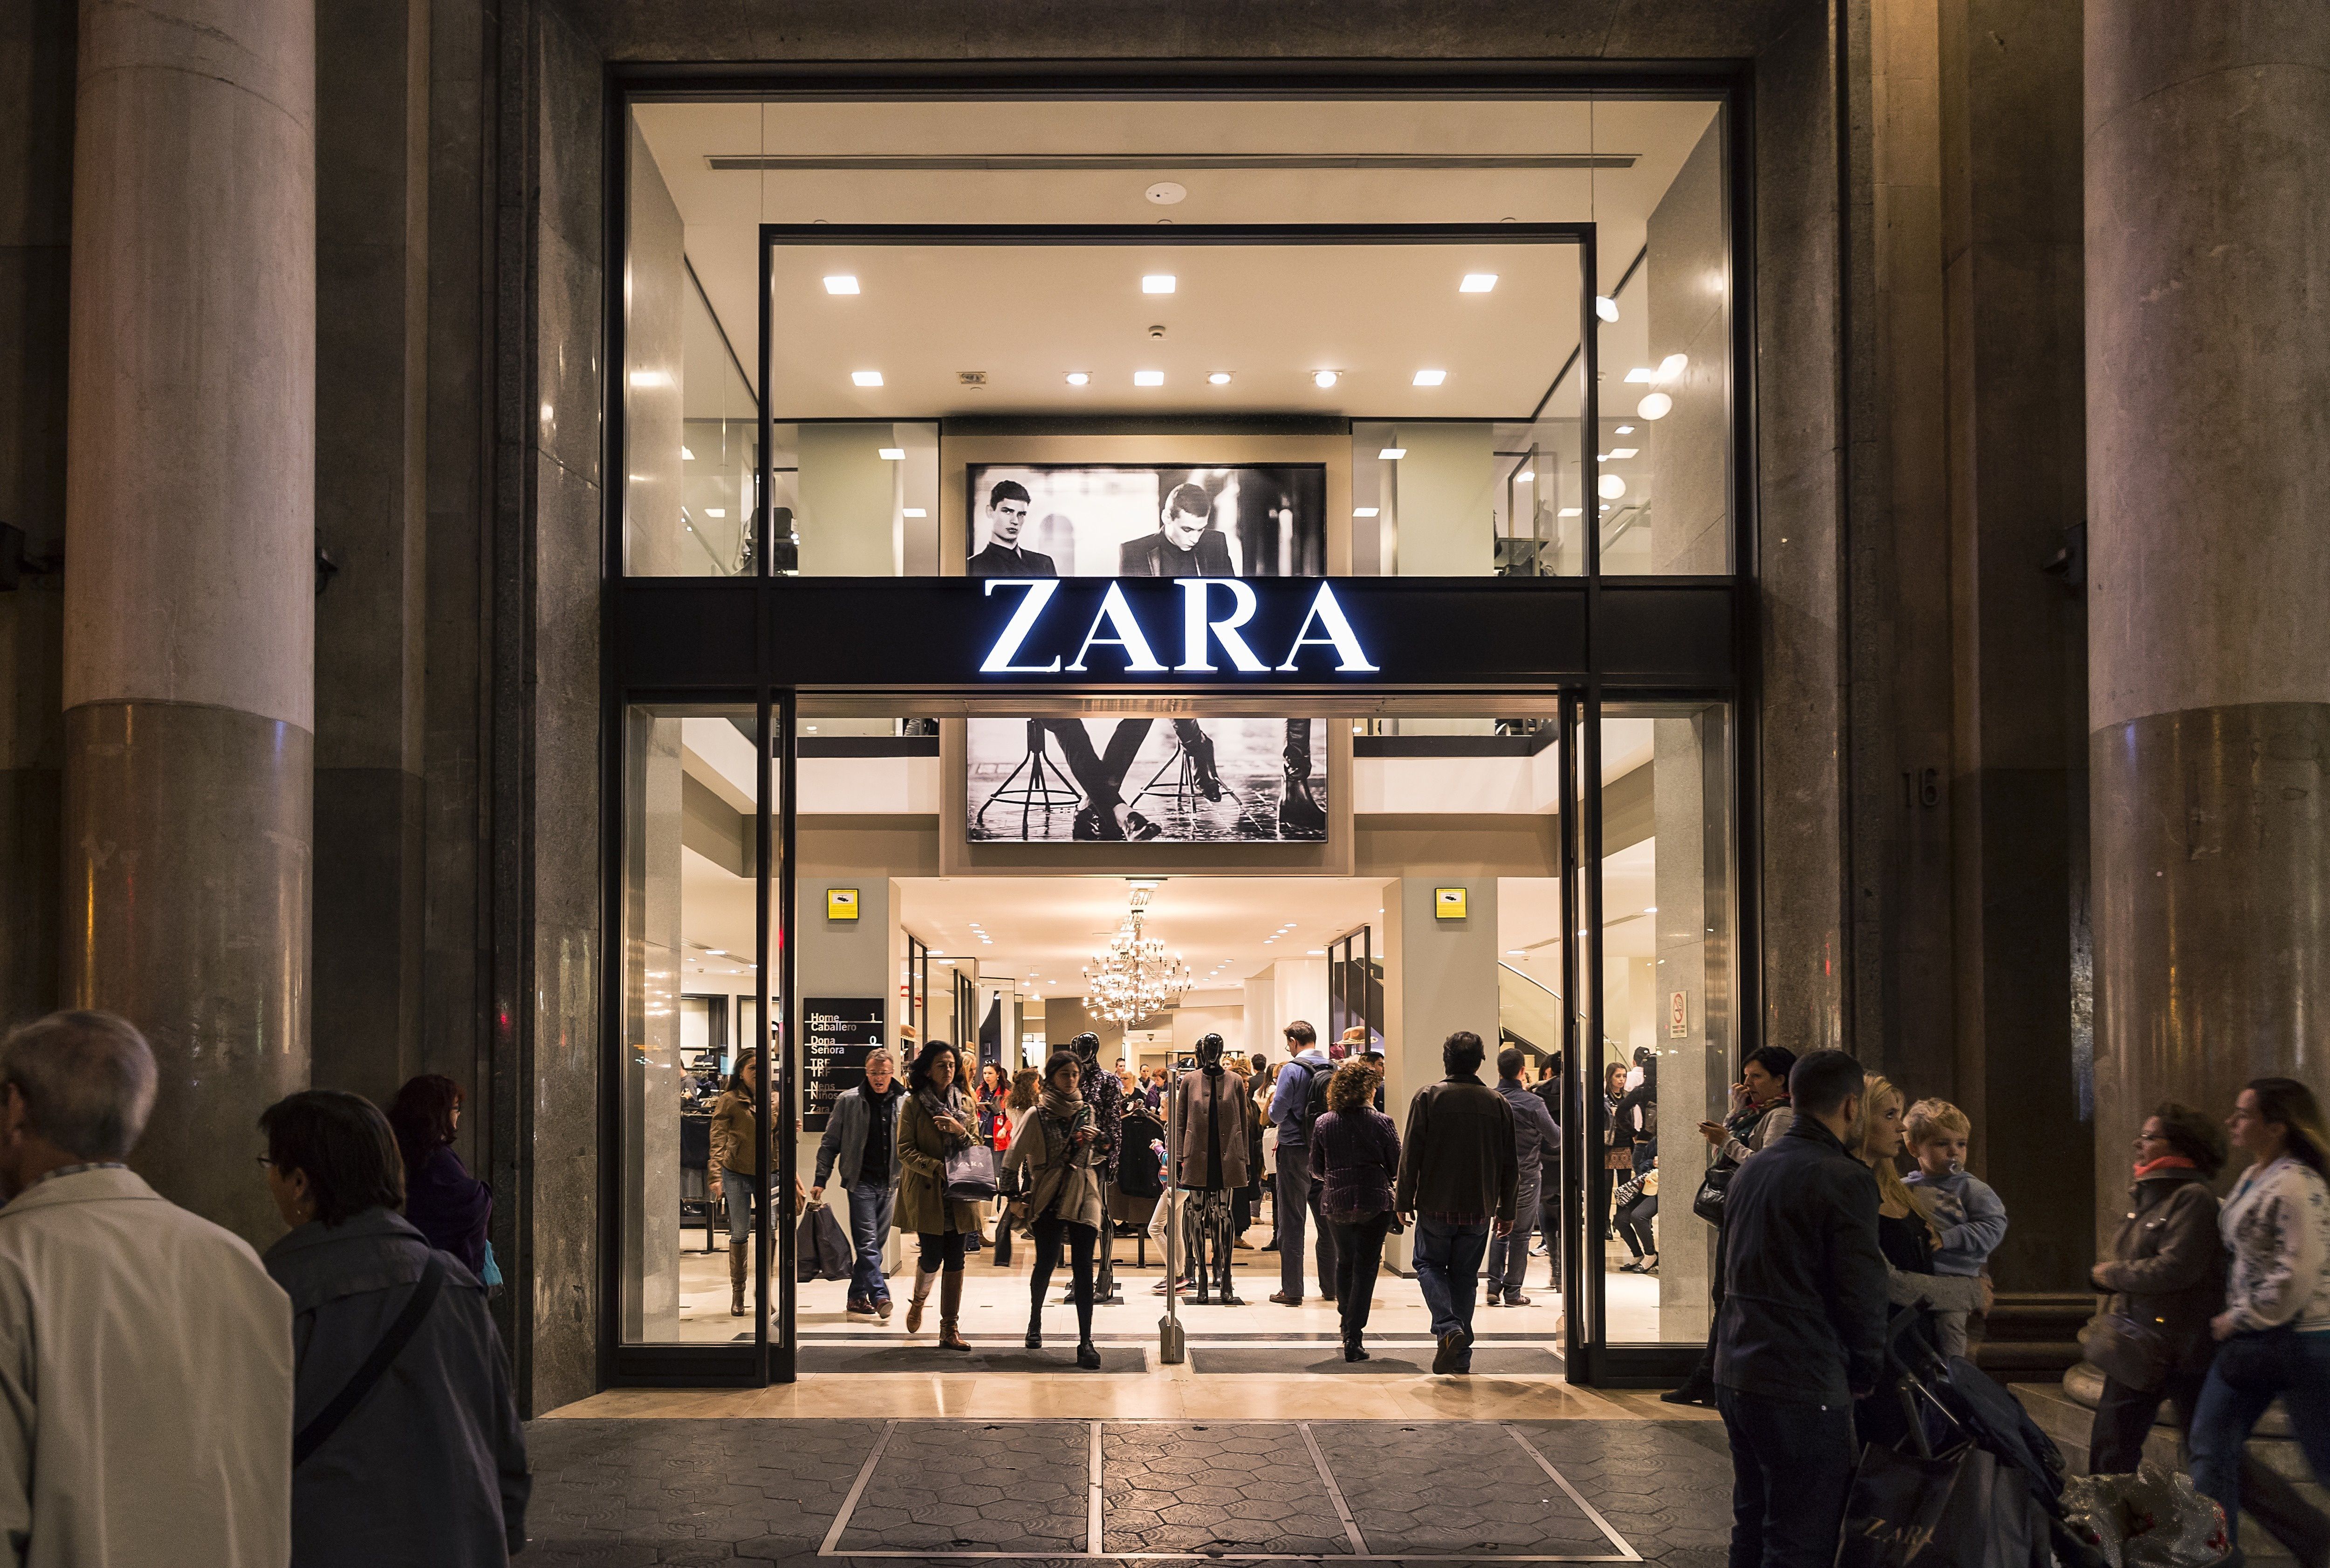 El secreto de de Zara​ Guía para comprar en Zara